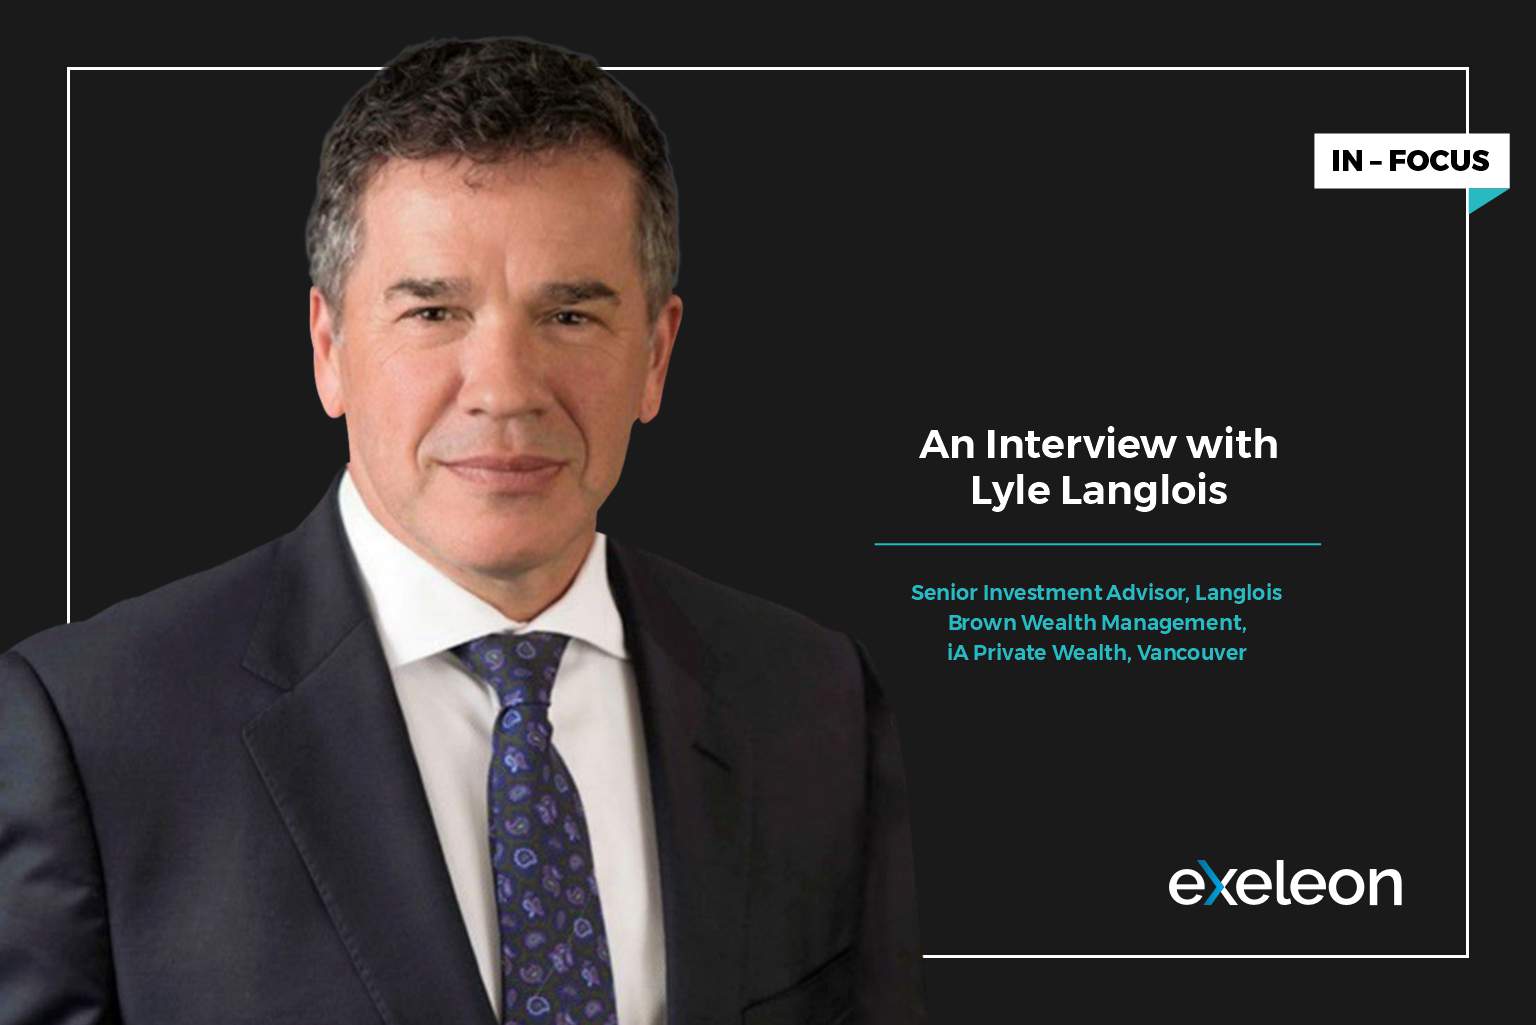 Lyle Langlois